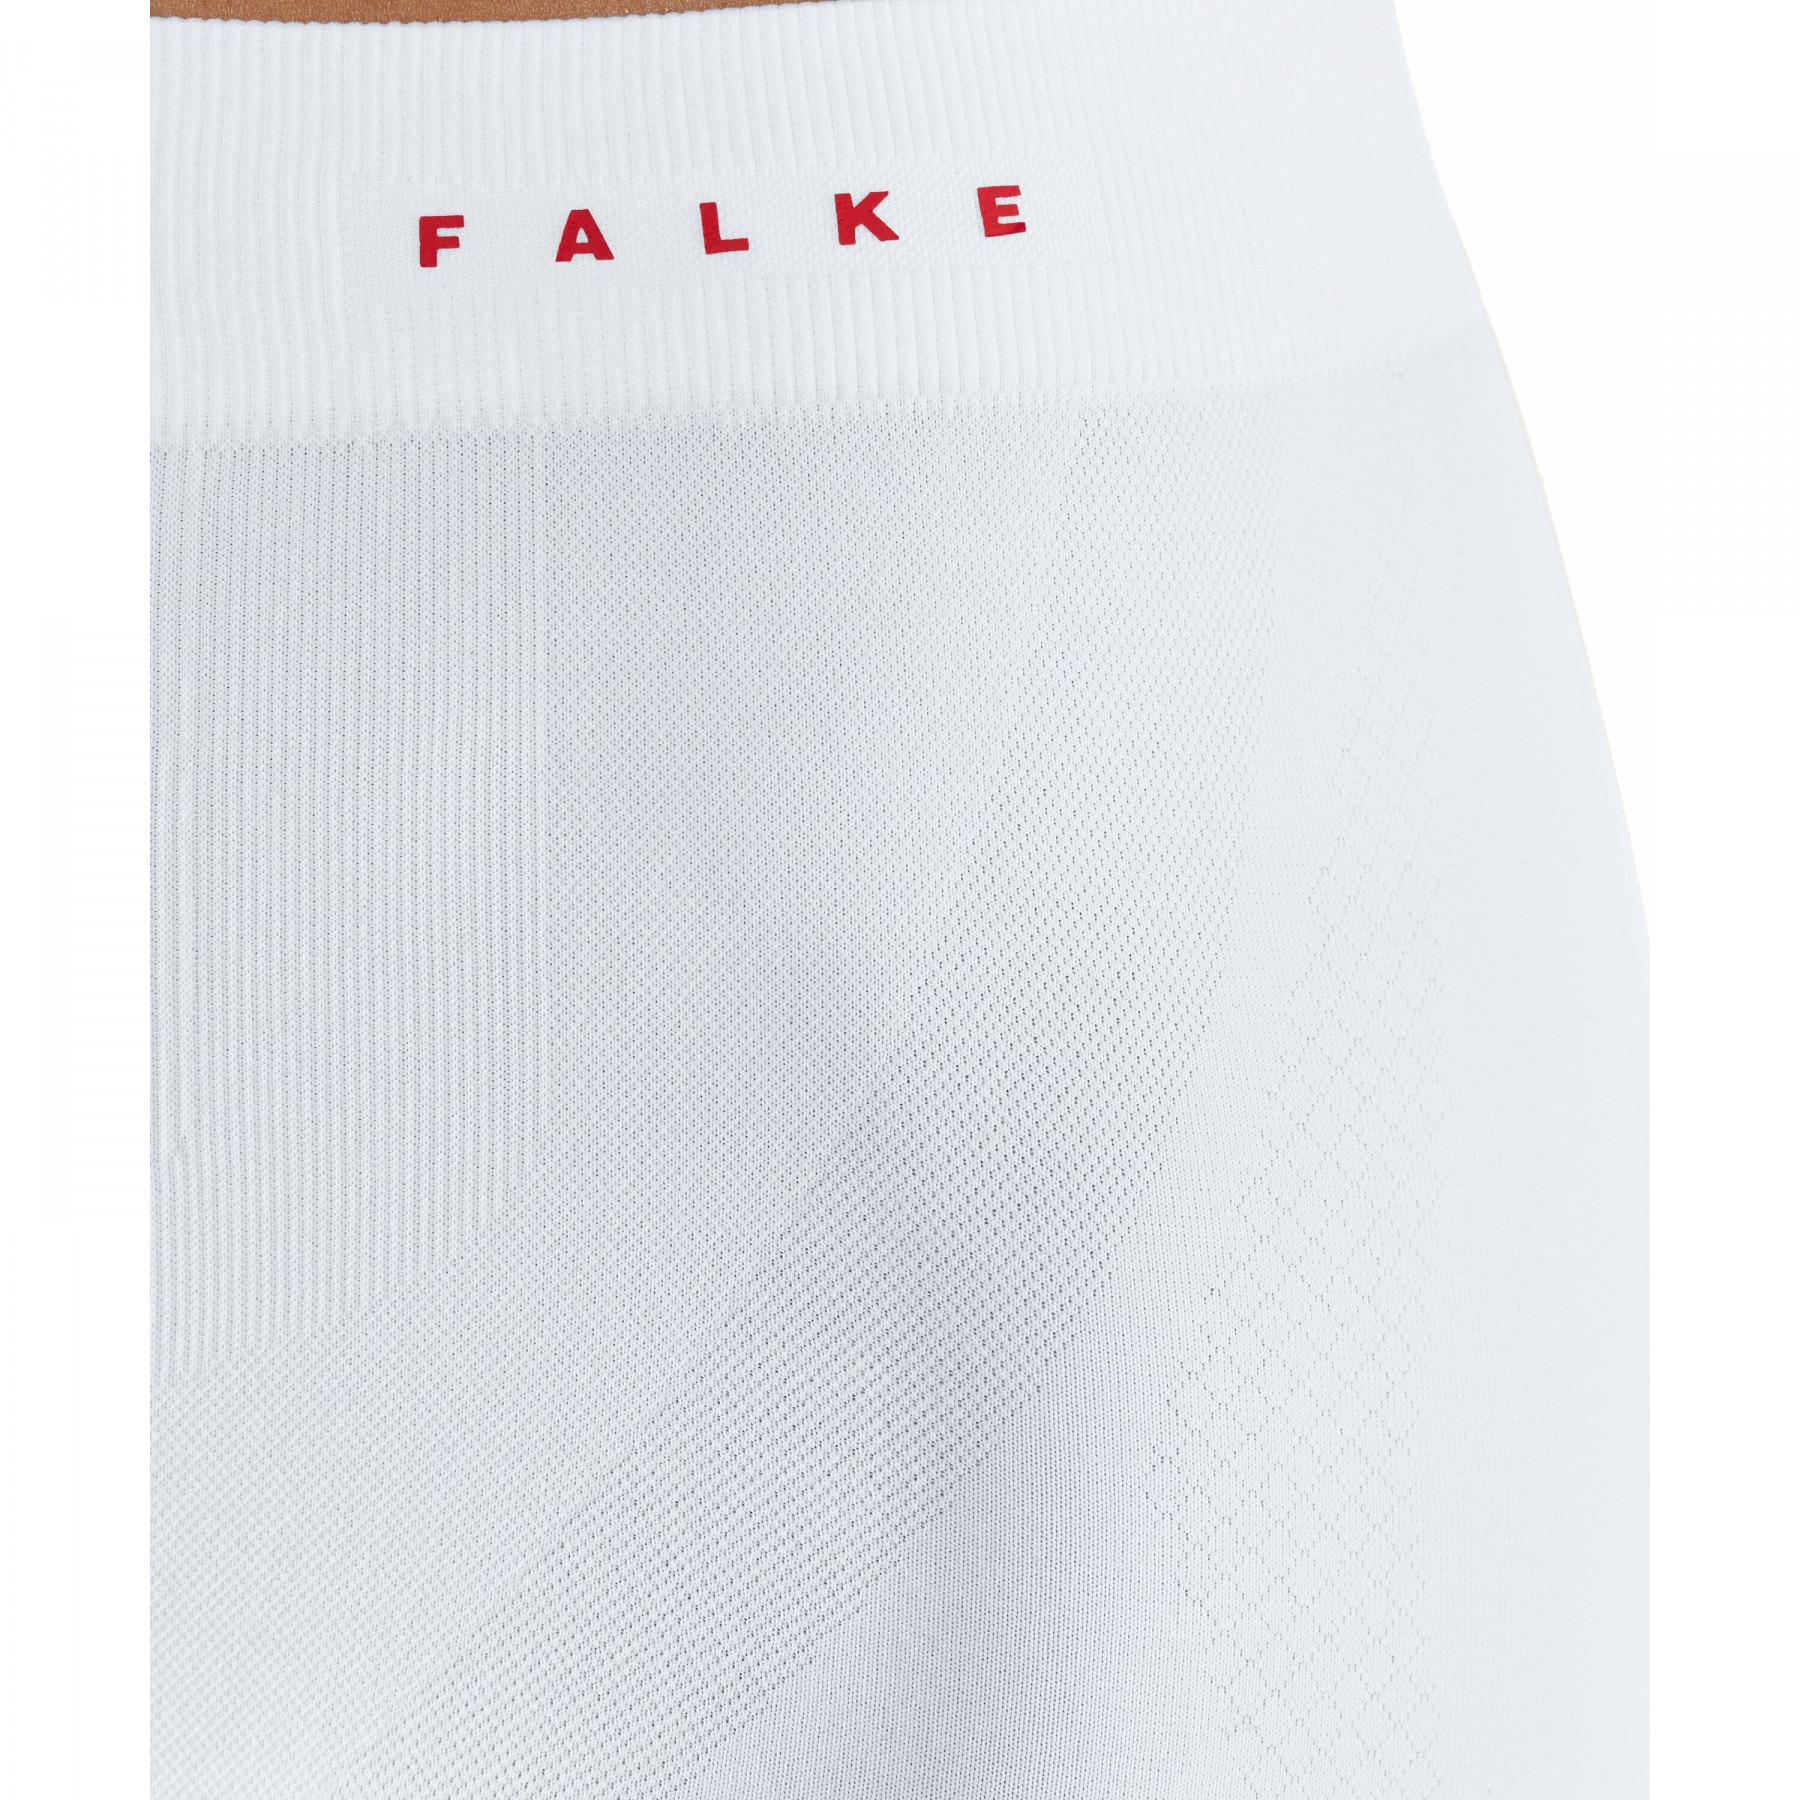 Women's tights Falke 3/4 Warm